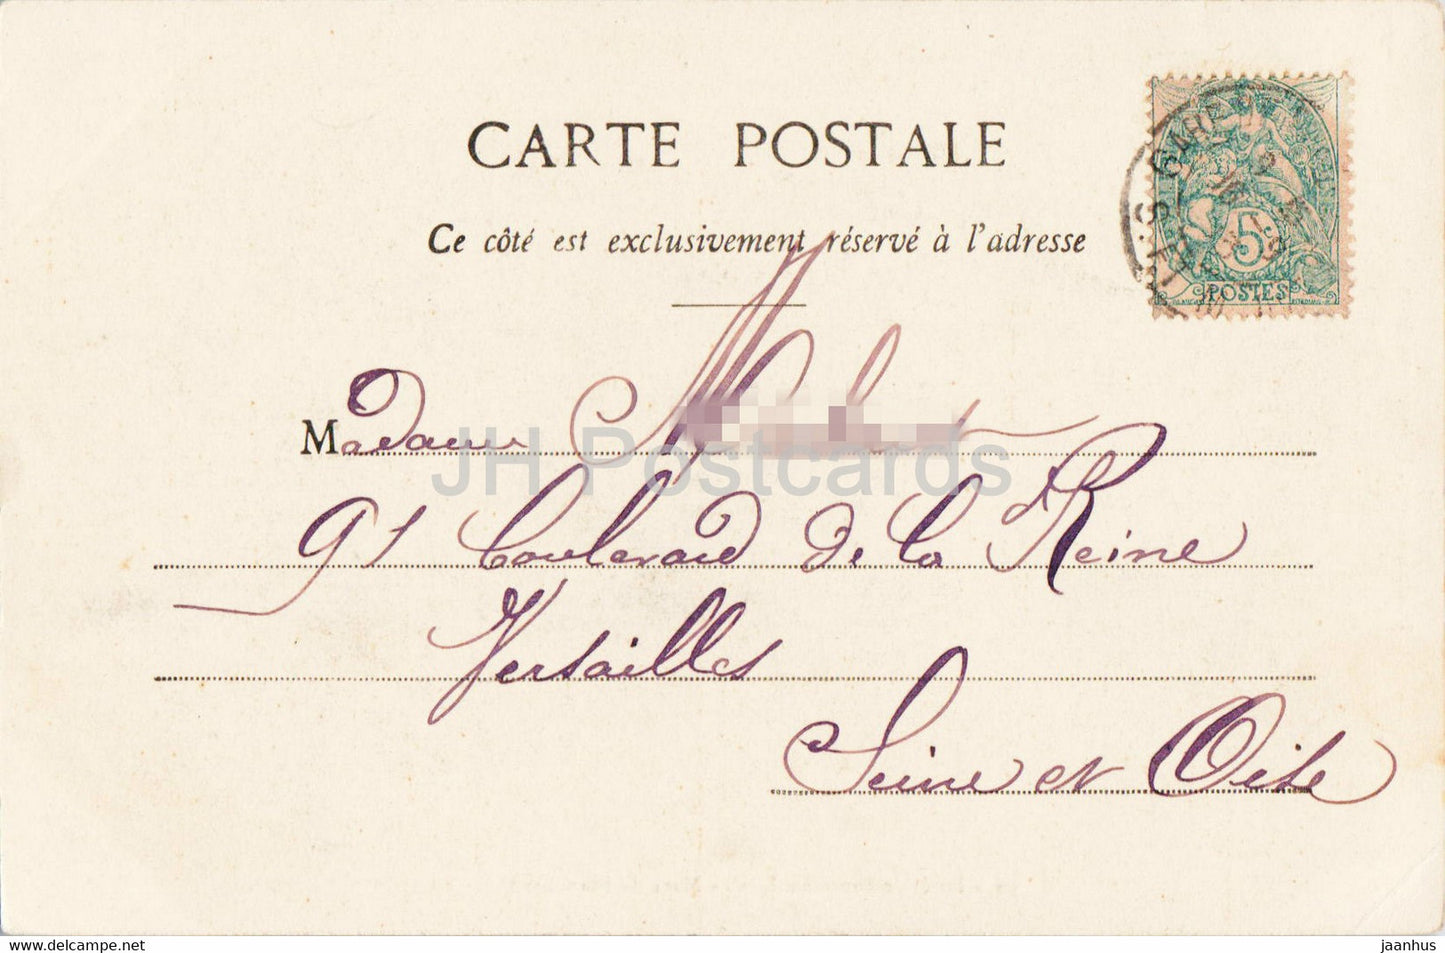 Foret de Fontainebleau -Mare de Franchard - 96 - old postcard - France - used